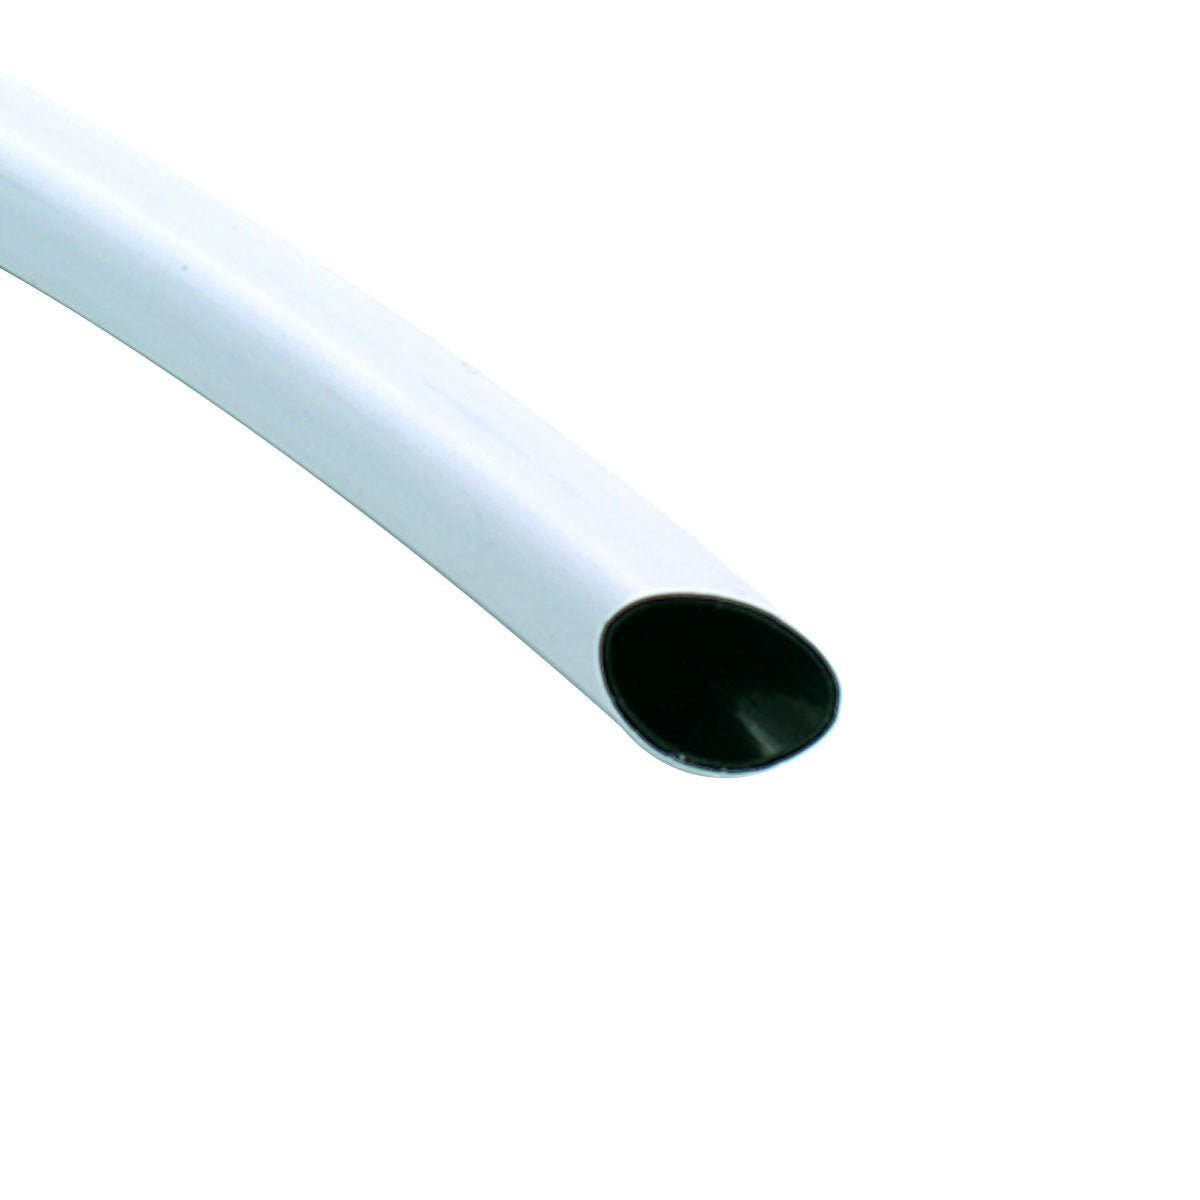 Product Secondary Image:Tubes à double couche FloraFlex 16-17mm